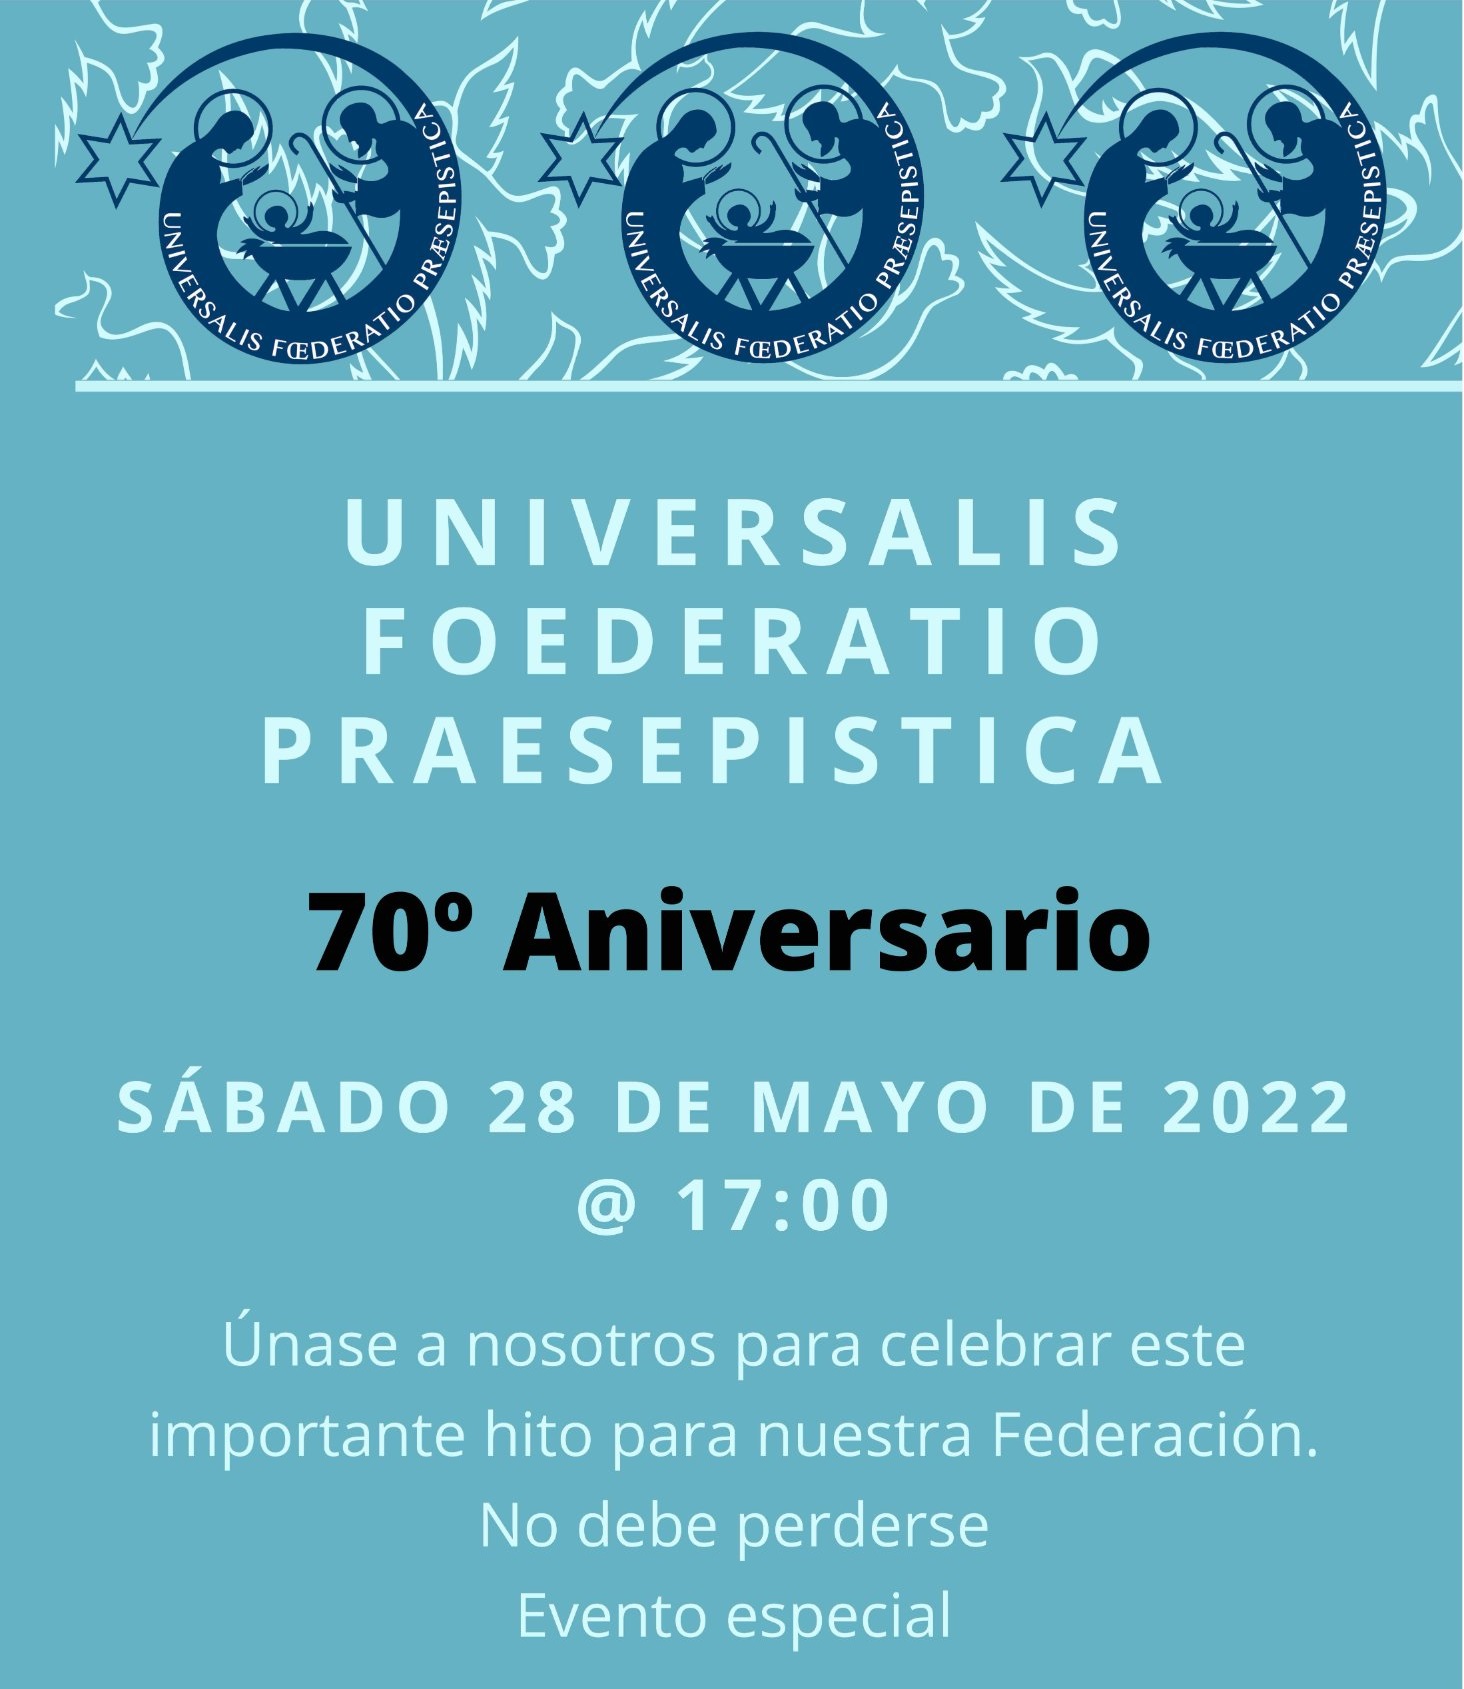 Anuncio del evento de conmemoración del 70 aniversario de la Universalis Foederatio Praesepistica (Un-Foe-Prae)